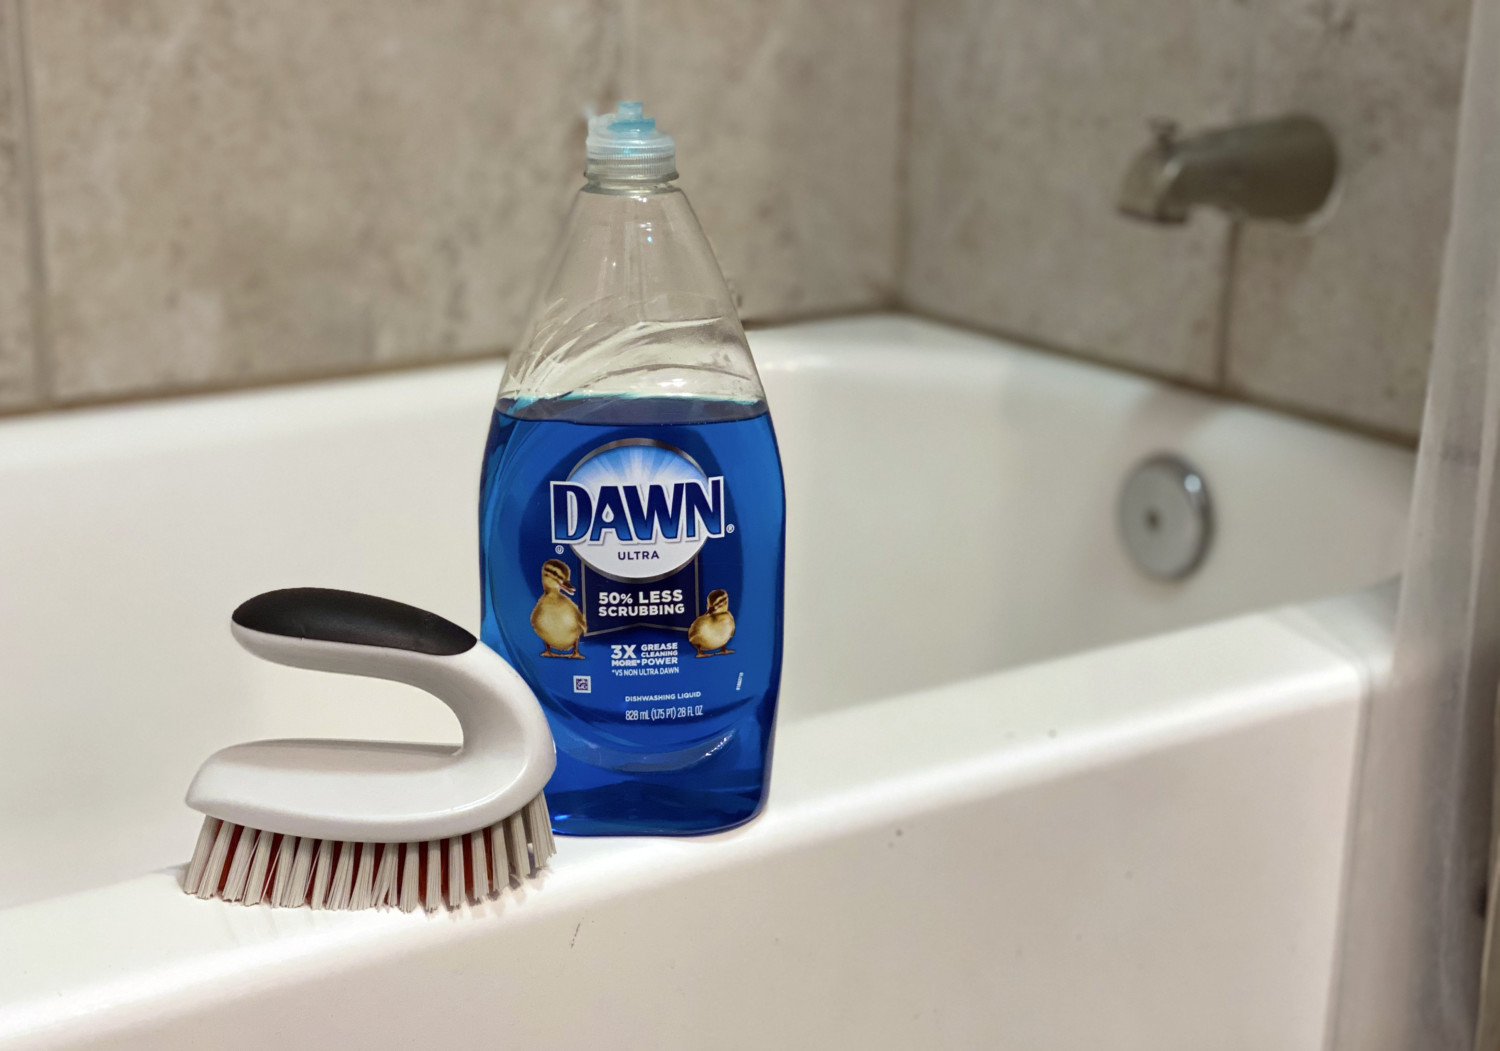 Why Put Dawn Dish Soap In The Bathtub Overnight?